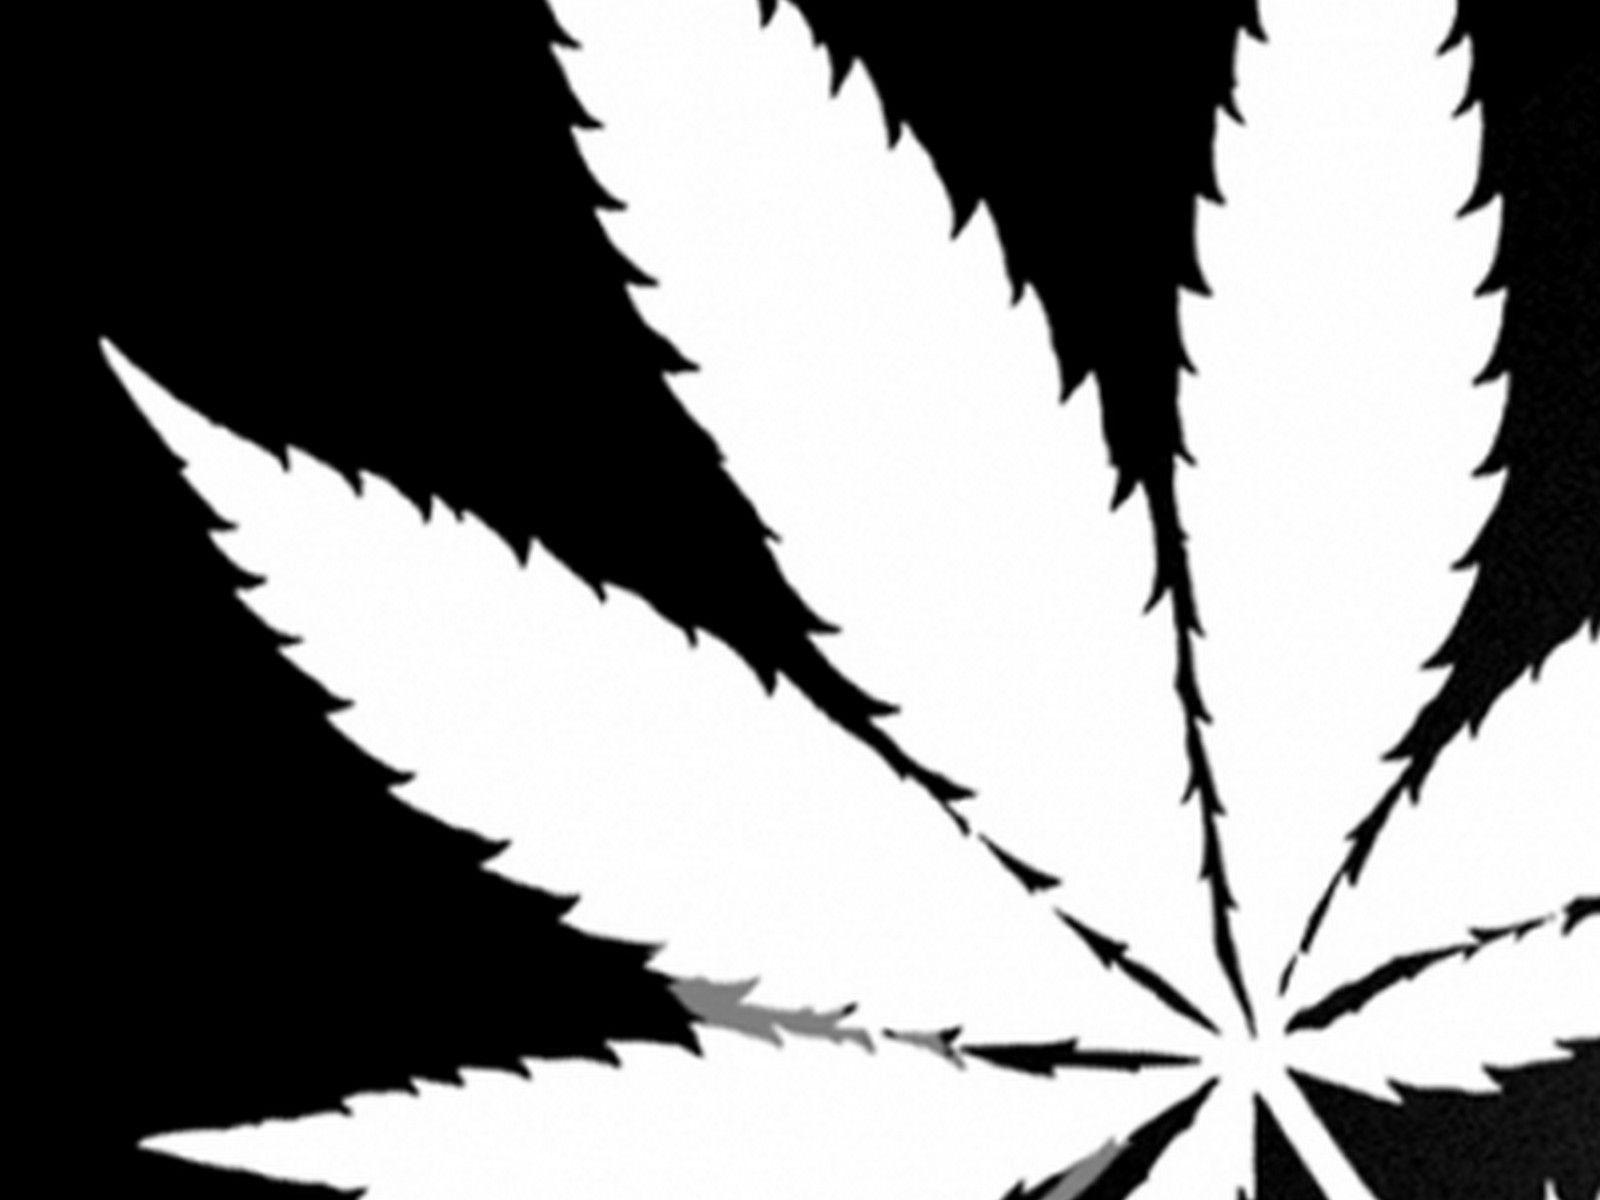 Big FN Cannabis Leaf in Black and White